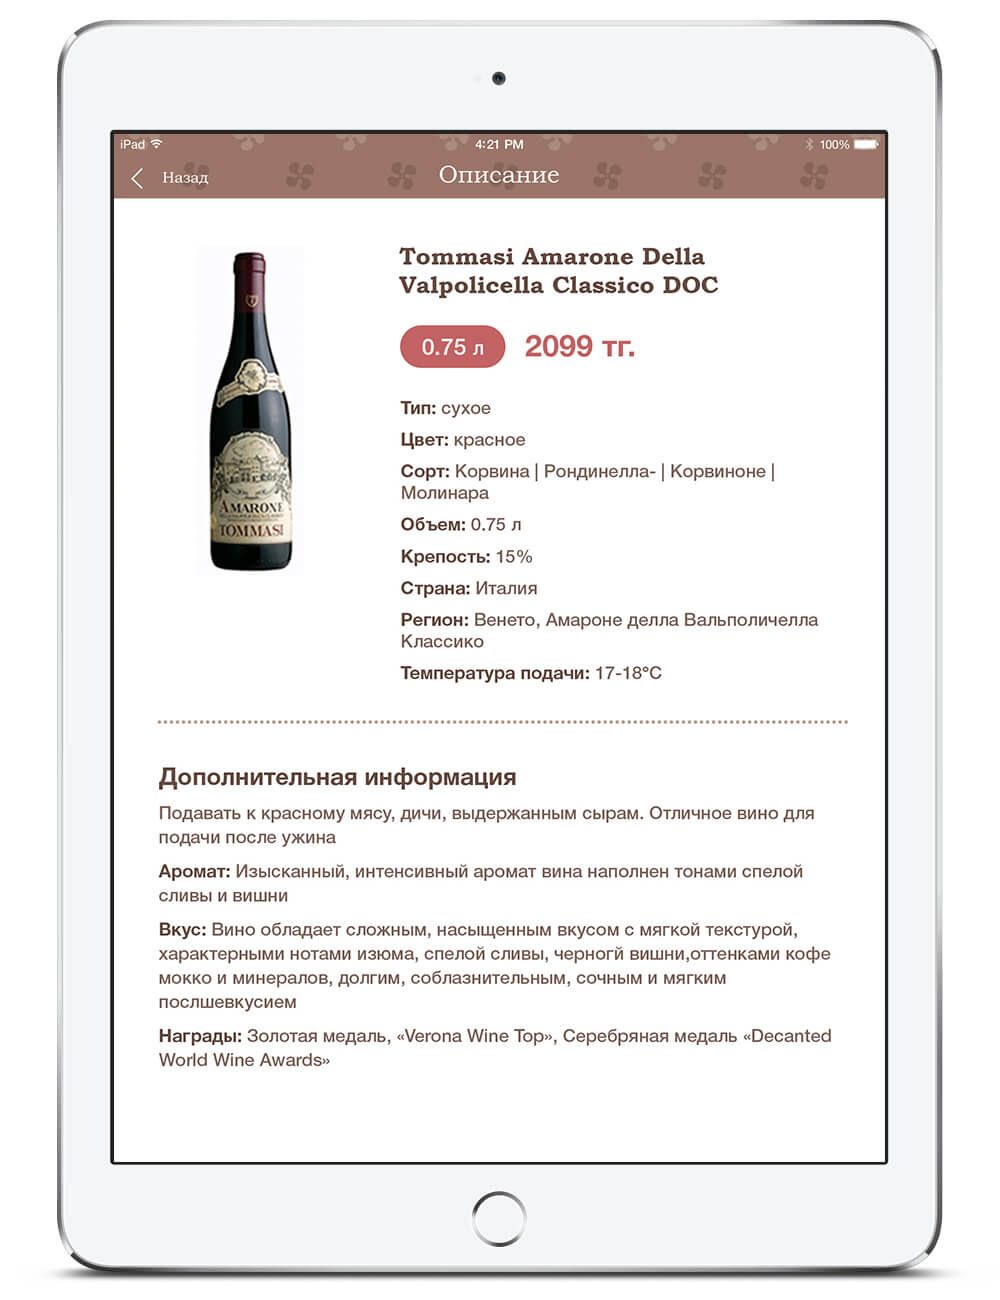 Приложение для iPad mini с каталогом вин, представленных в городском кафе Плюшкин